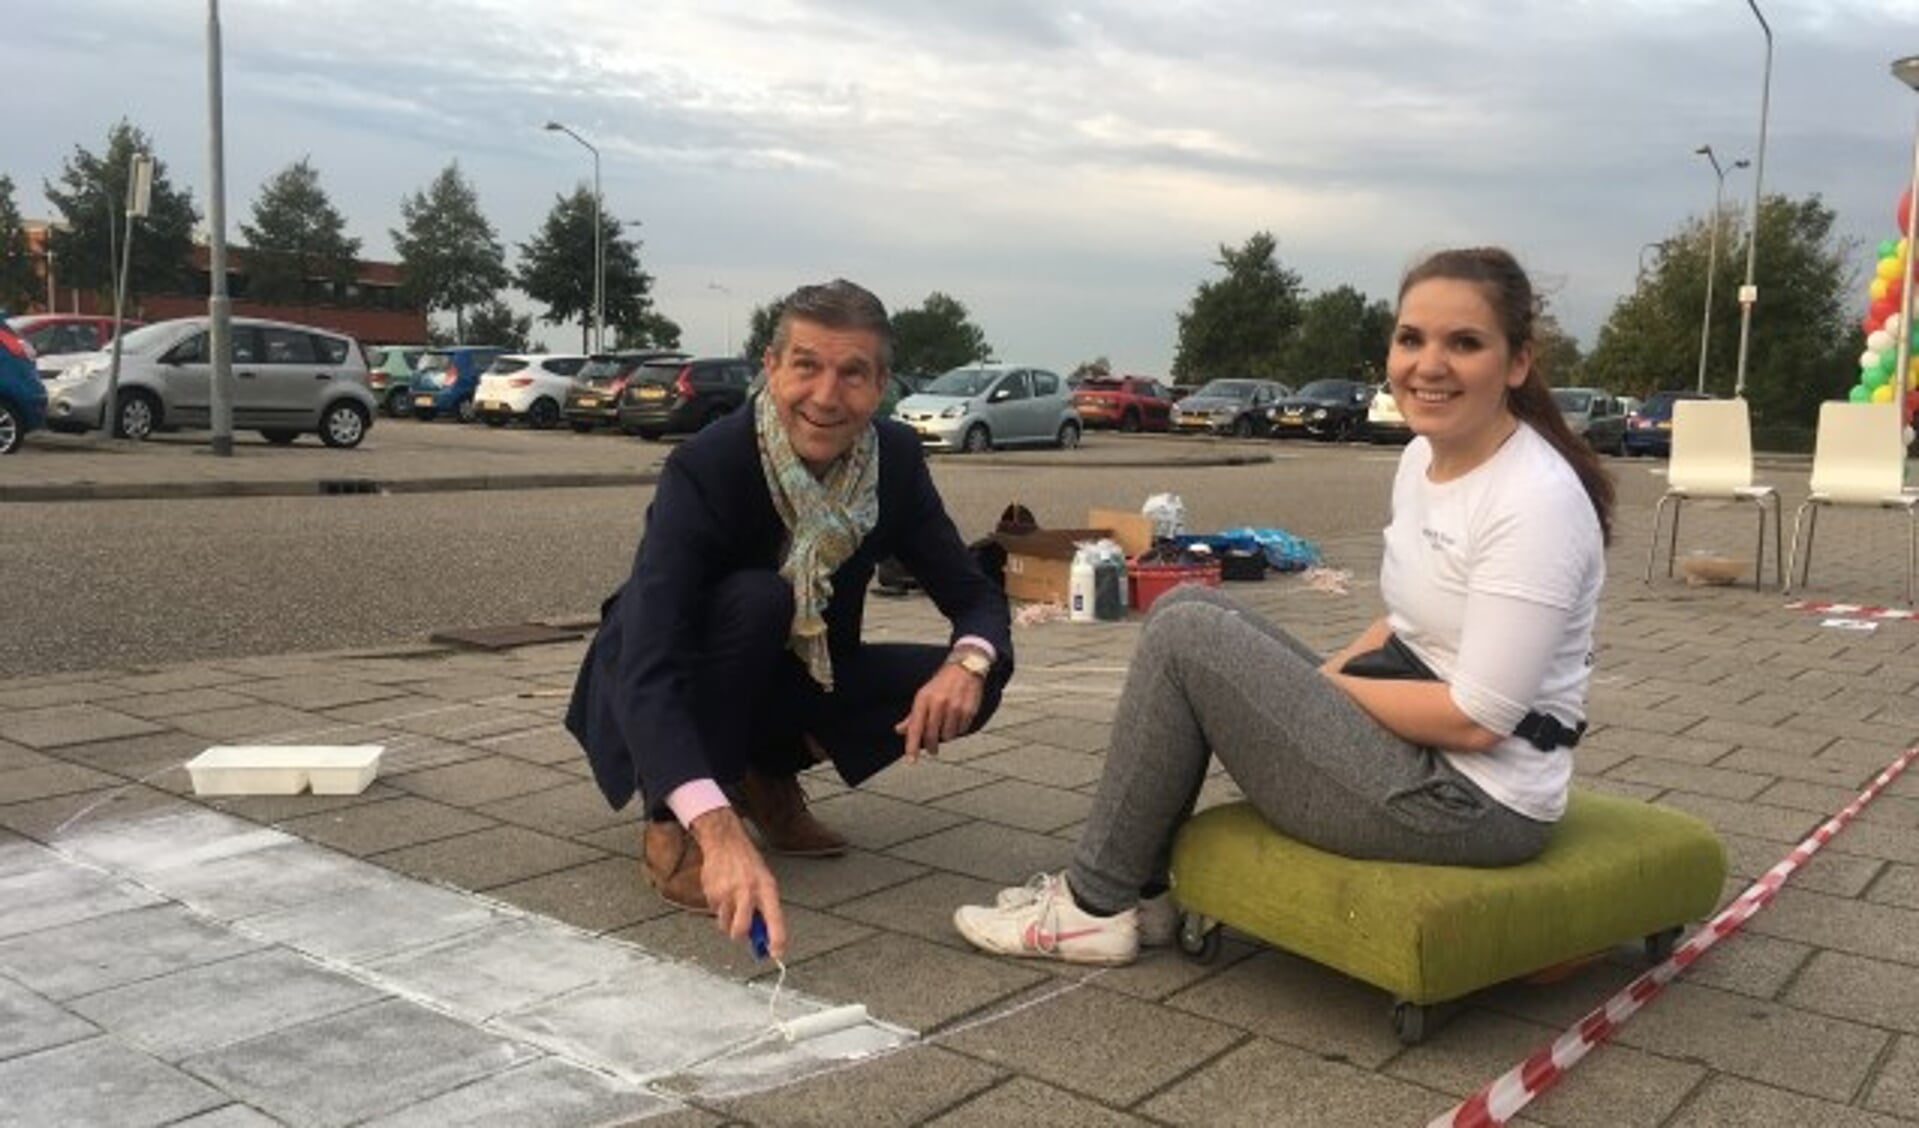 Wethouder Simon Fortuyn en kunstenaar Rianne te Kaat brengen street art aan om aandacht te vragen voor het proeftuinonderzoek.